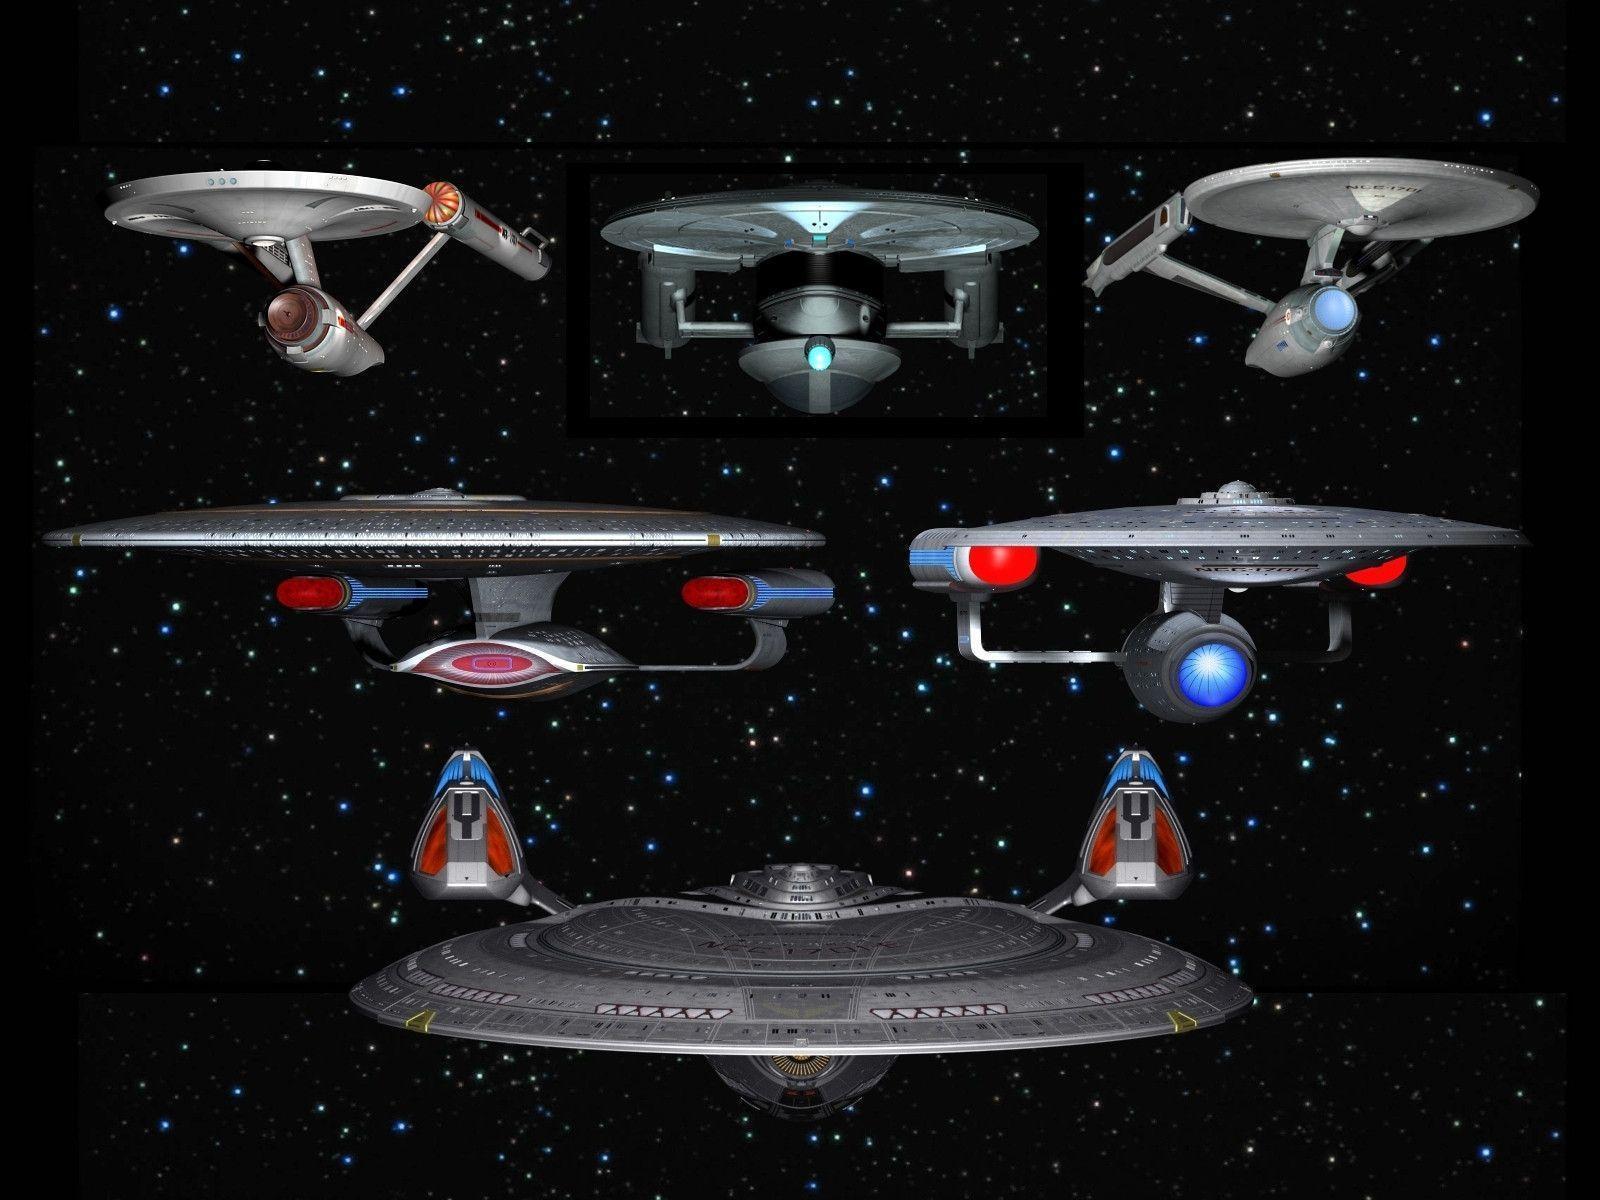 The Starships Enterprise